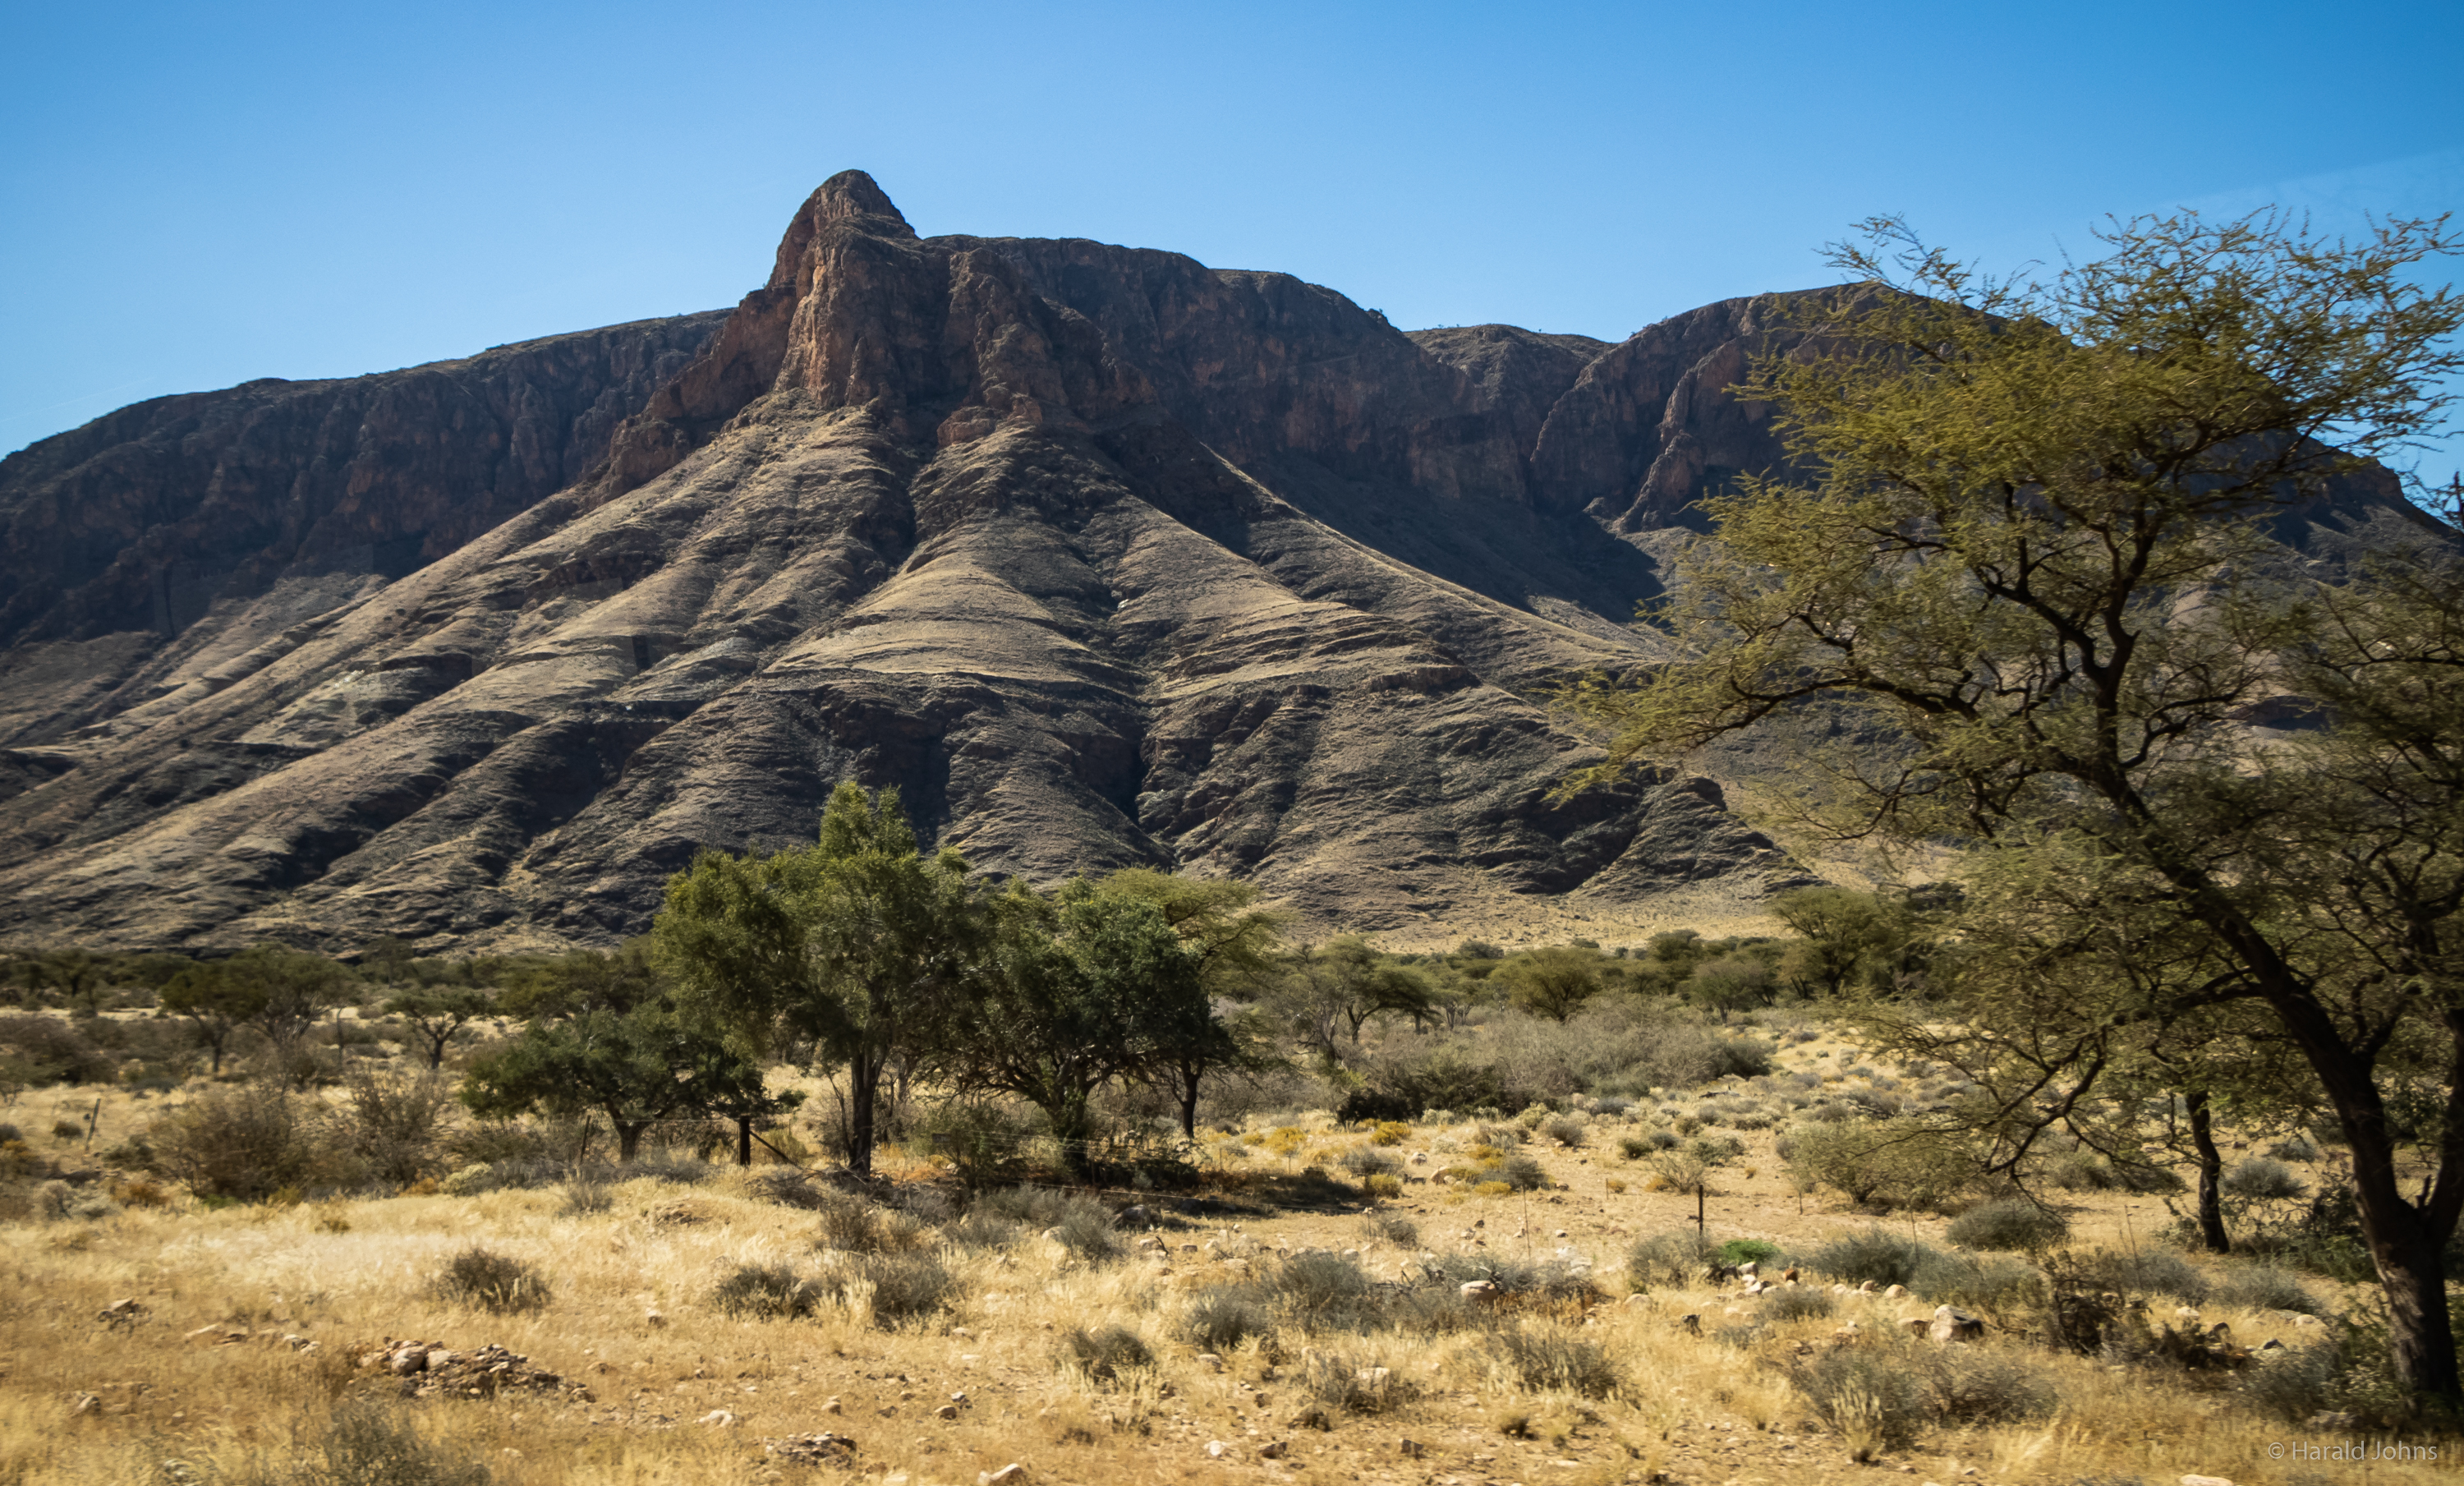 Flache und bergige Landschaften wechseln sich in der Dornstrauchsavanne der Kalaharie ab.